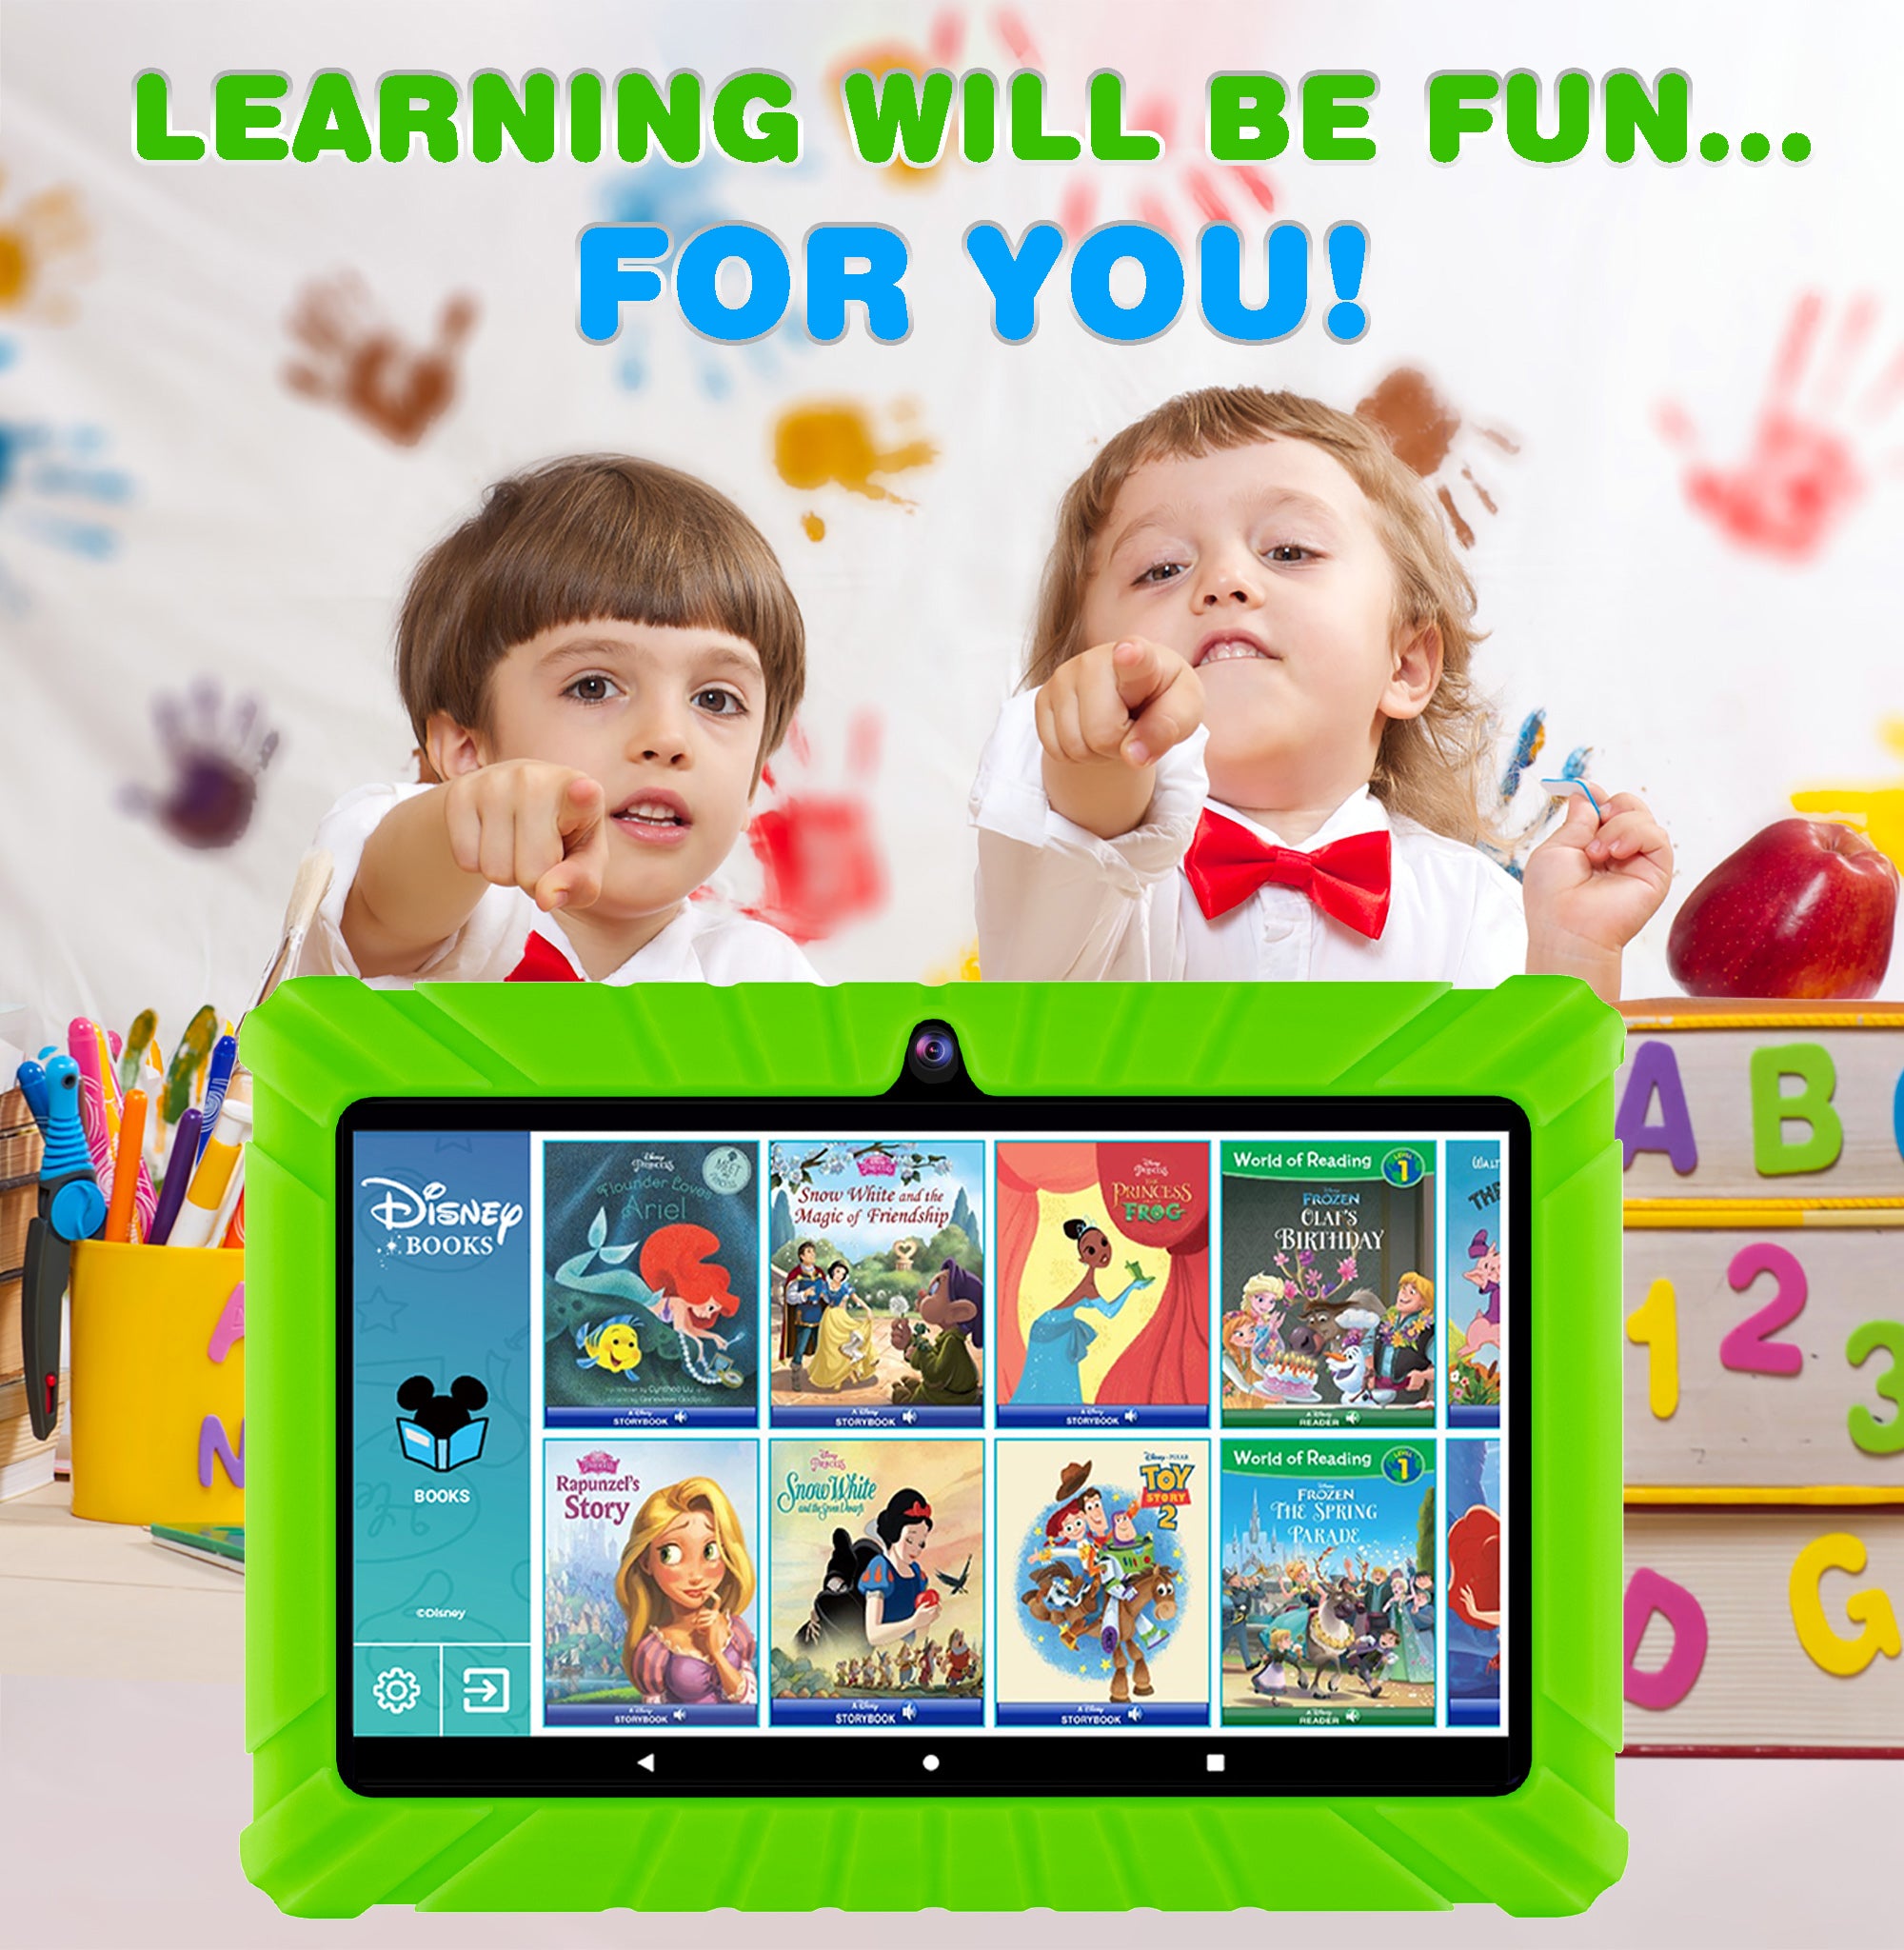 Contixo V8-2 Kids 7” Tablet - 50 Disney eBooks Included